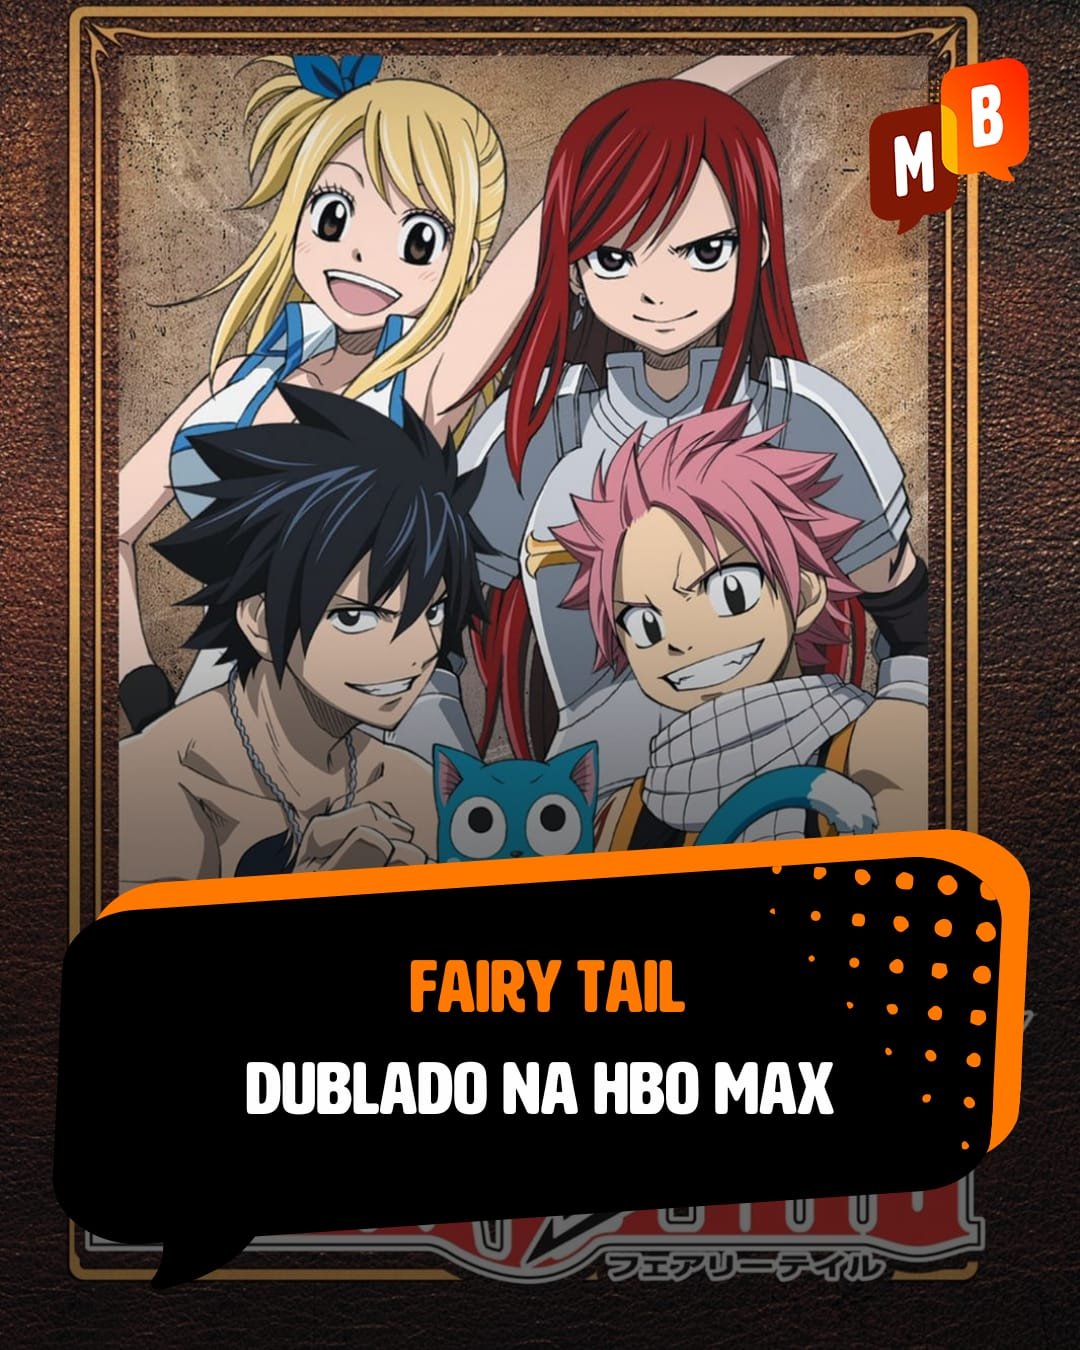 Dublagem de Fairy Tail chega ao HBO Max